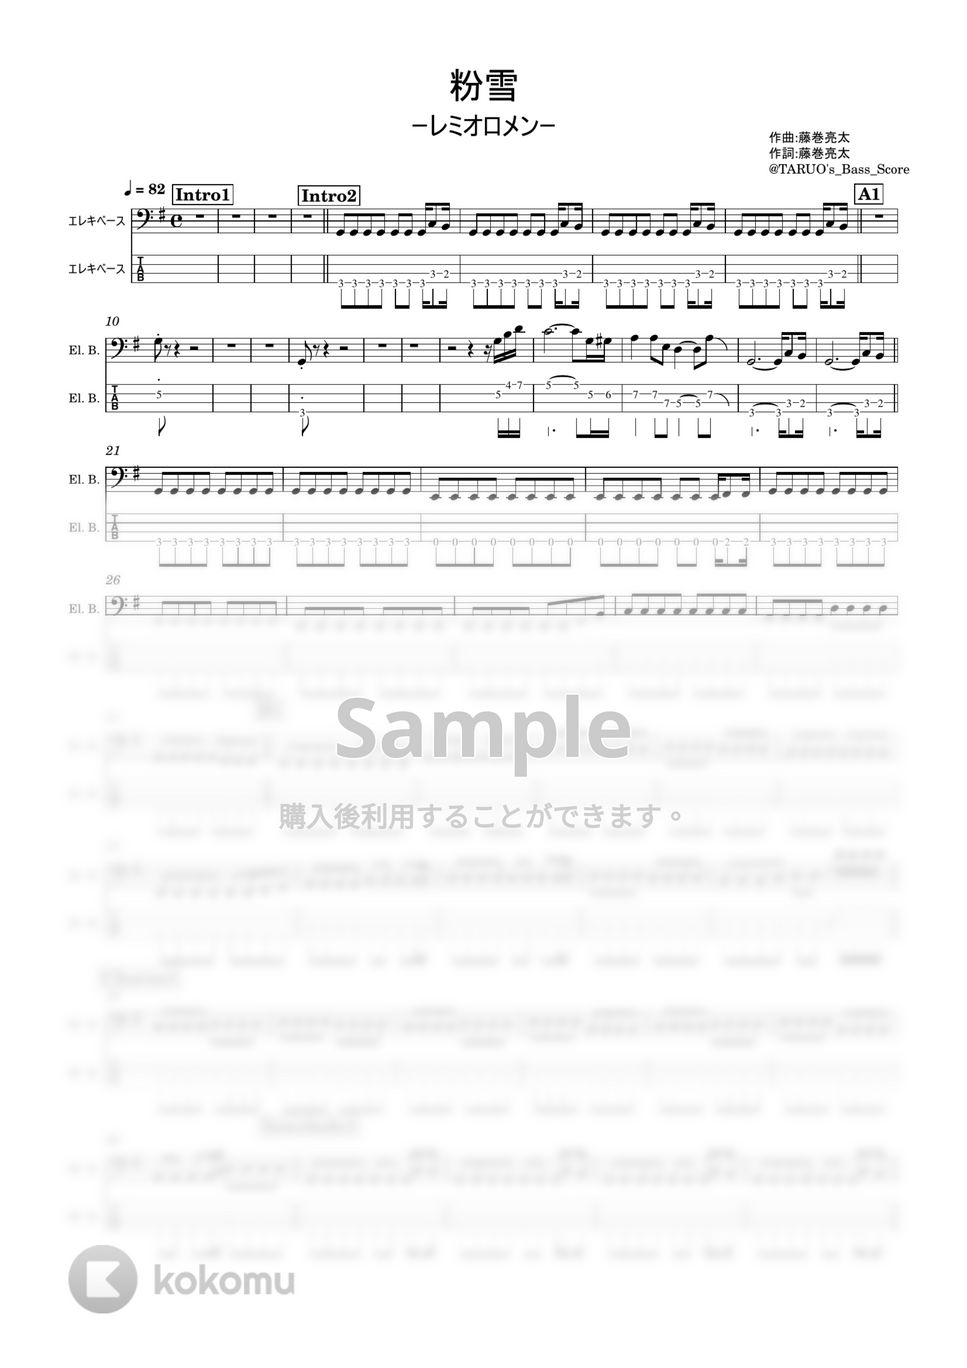 レミオロメン - 粉雪 (ベース / TAB) by TARUO's_Bass_Score